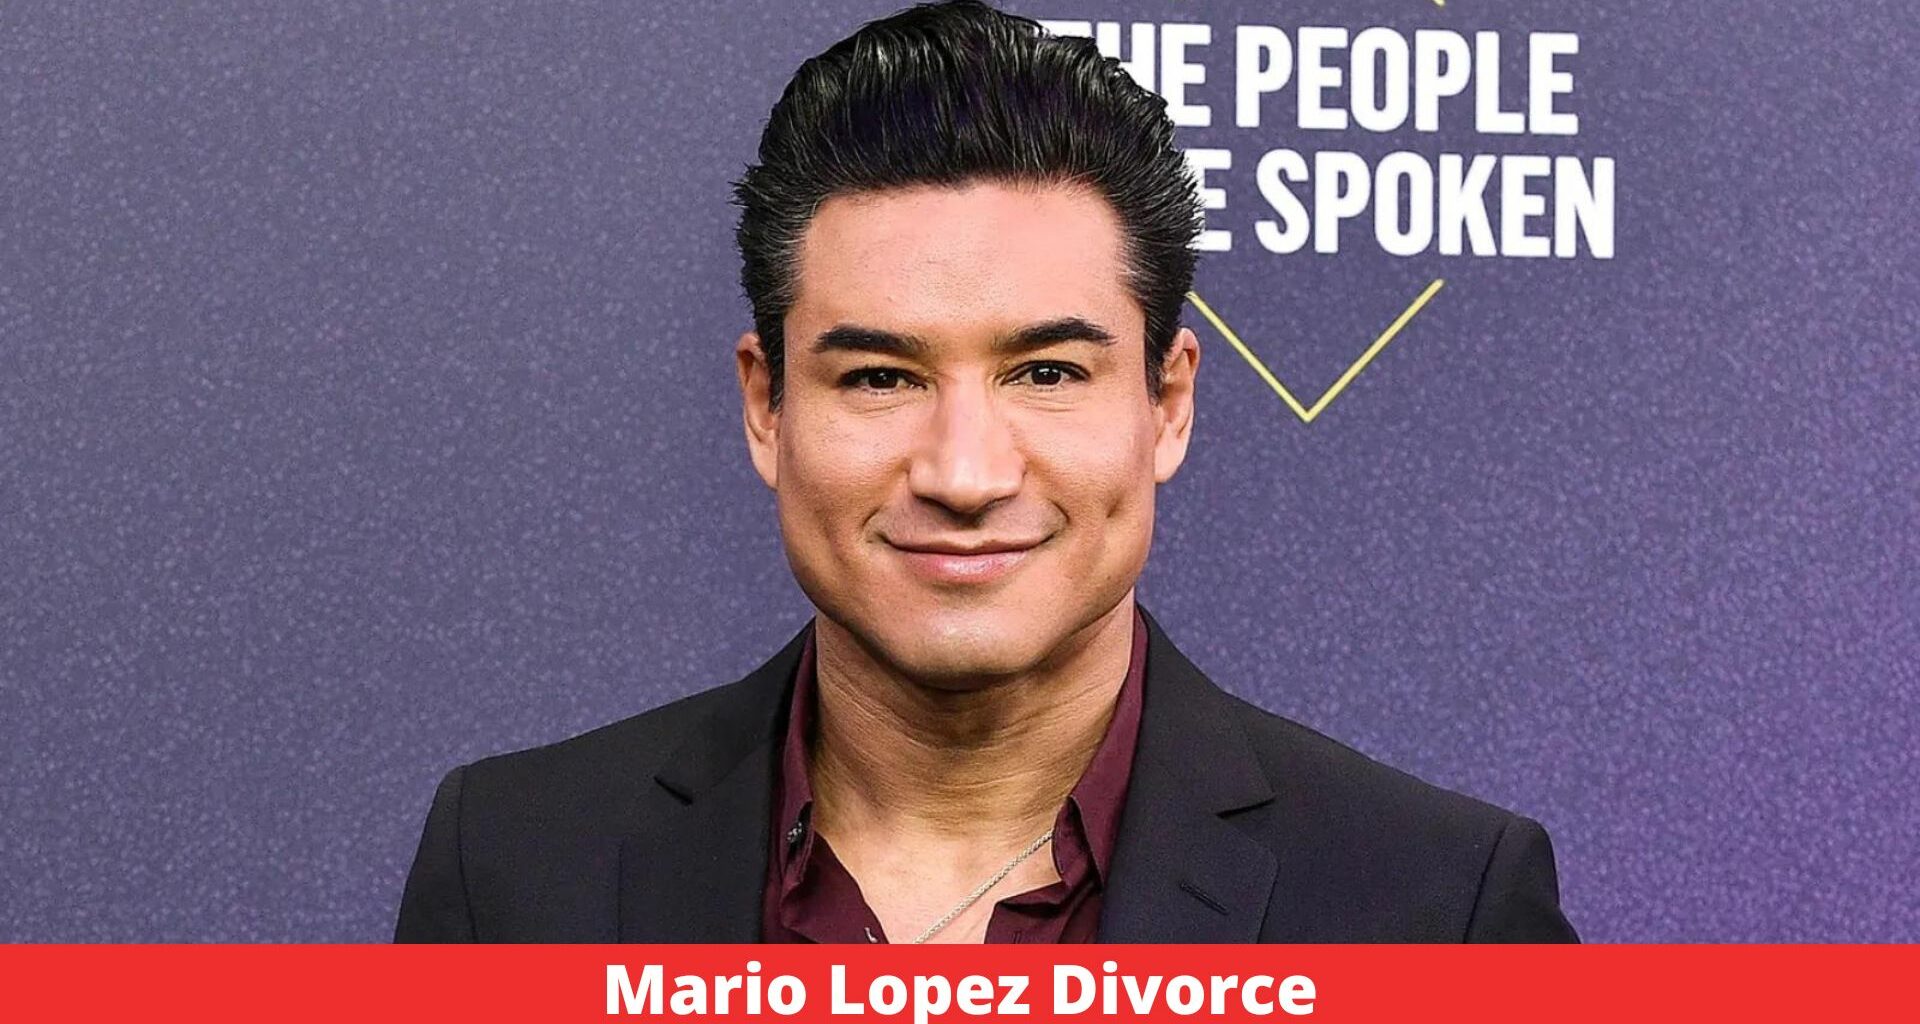 Mario Lopez Divorce